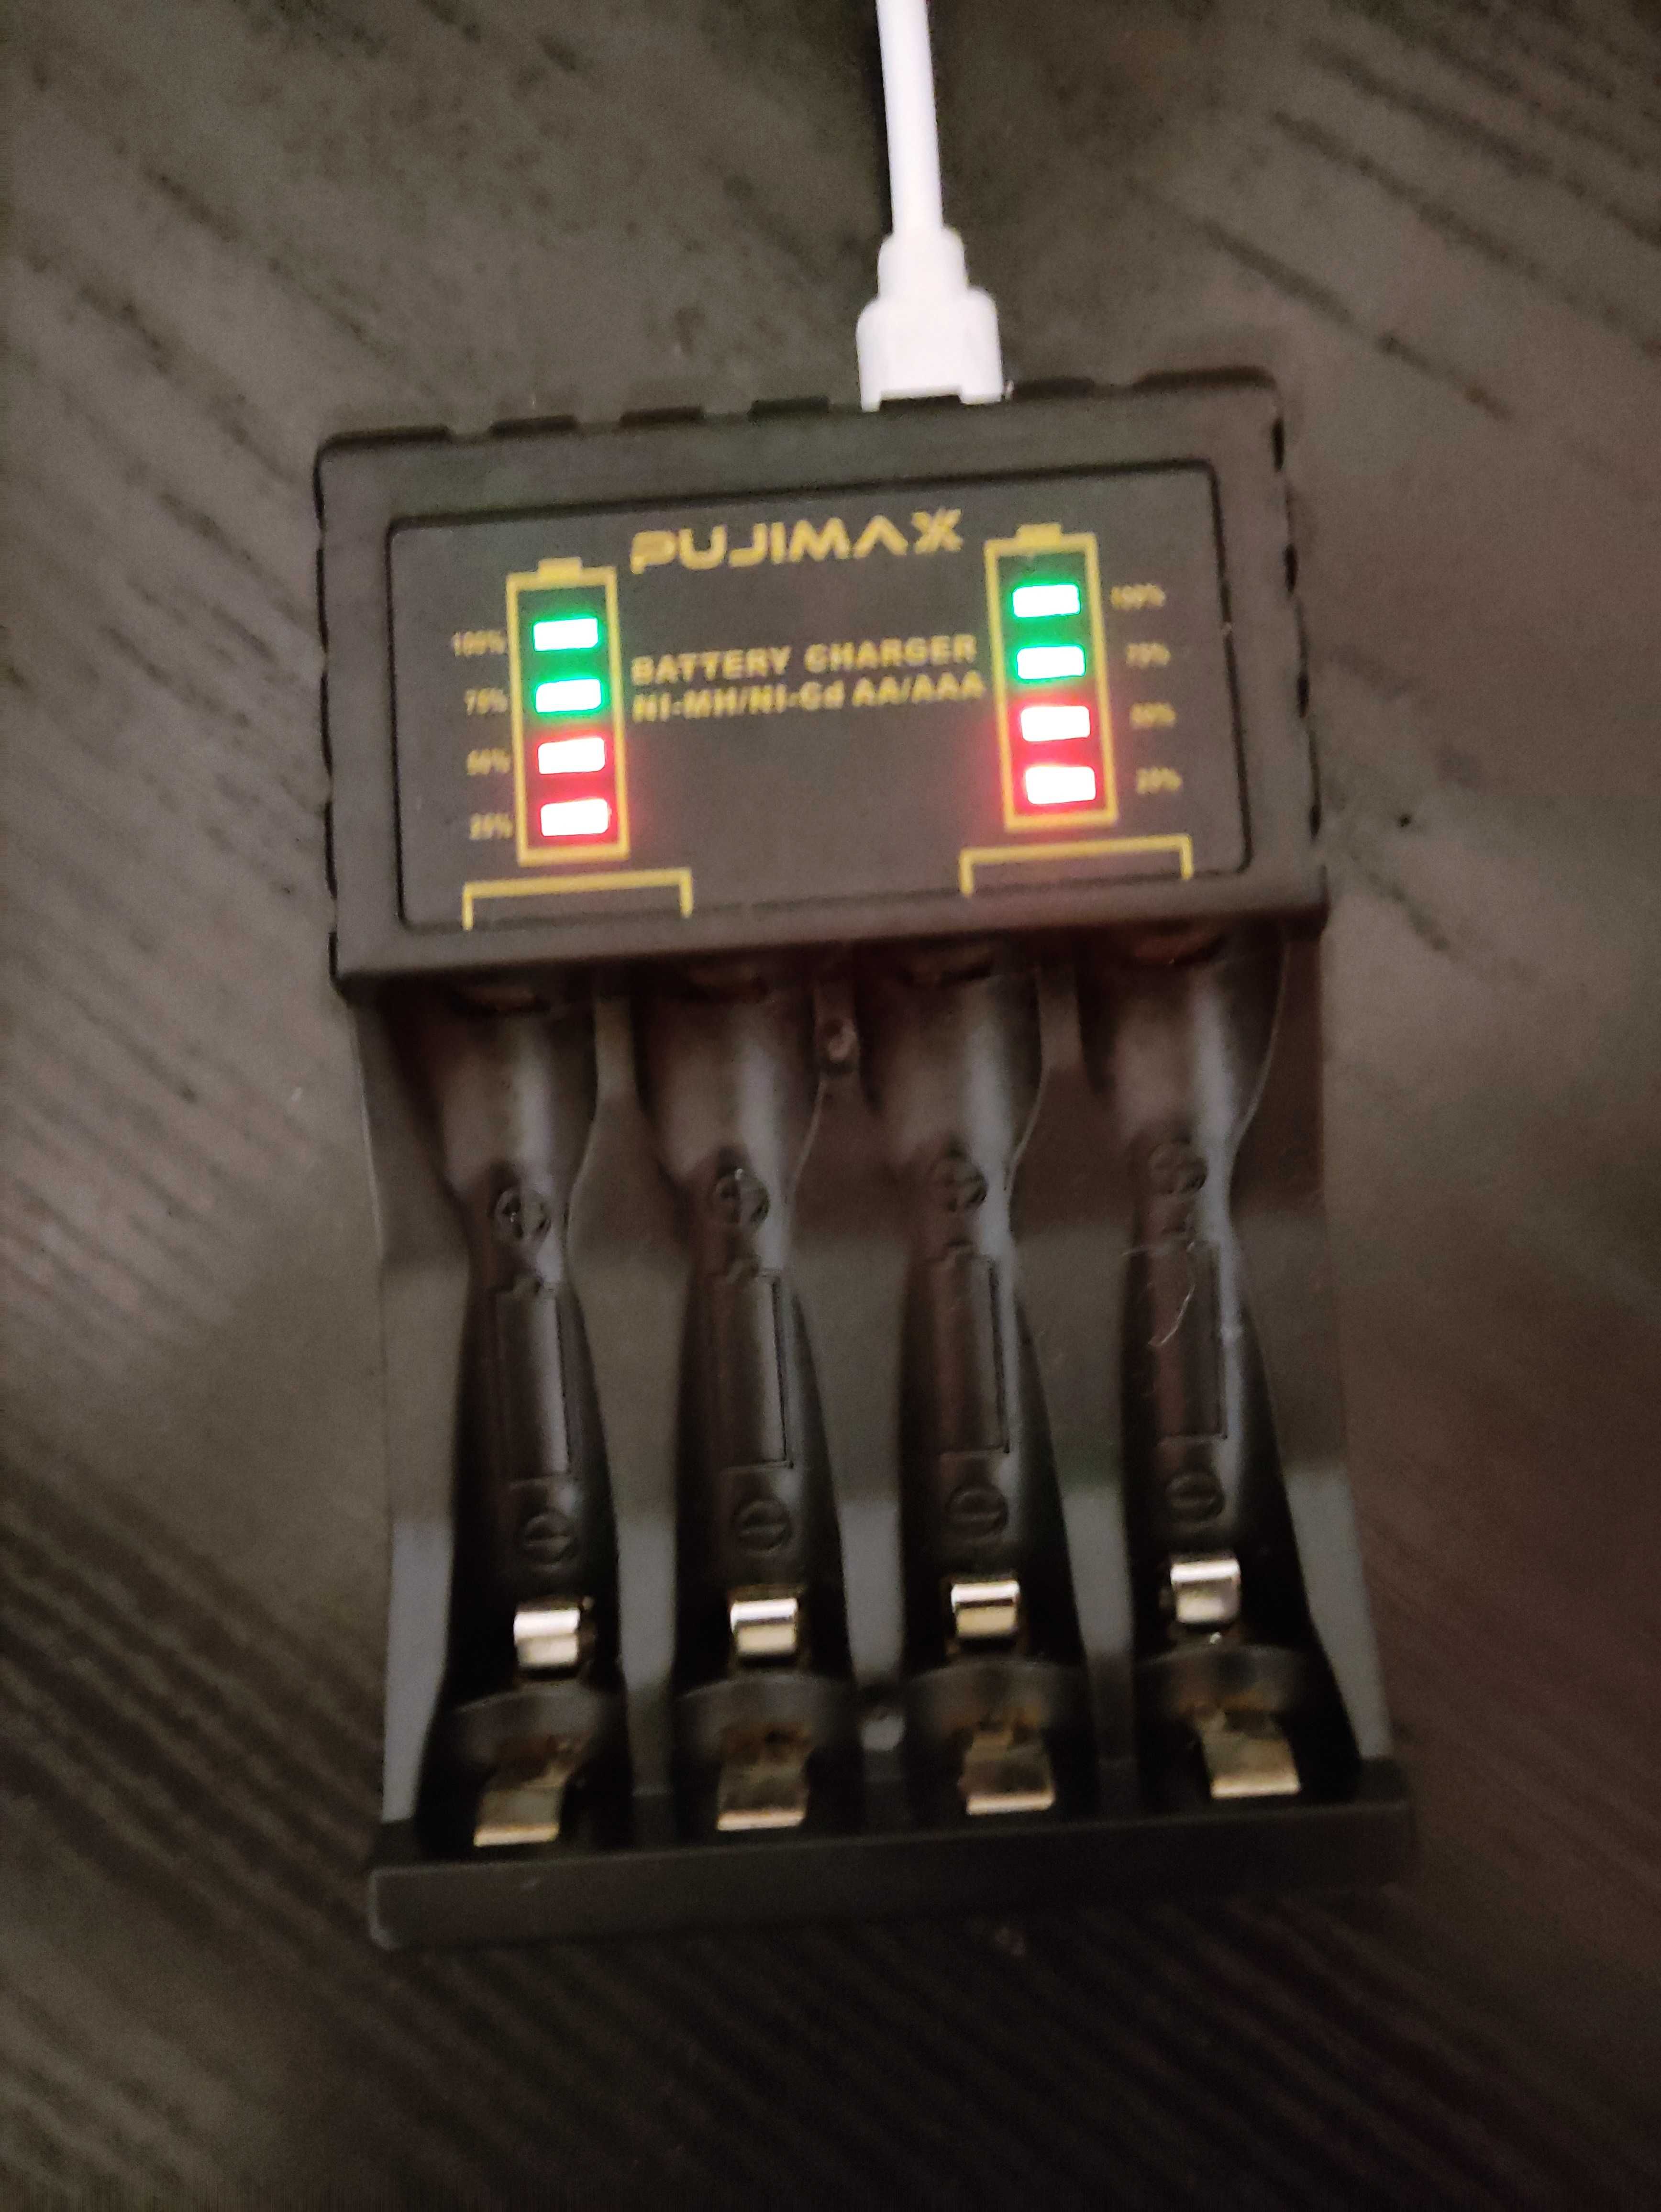 Pujimax Зарядний пристрій для аккумулятора батарей АА, ААА. Ni-Cd